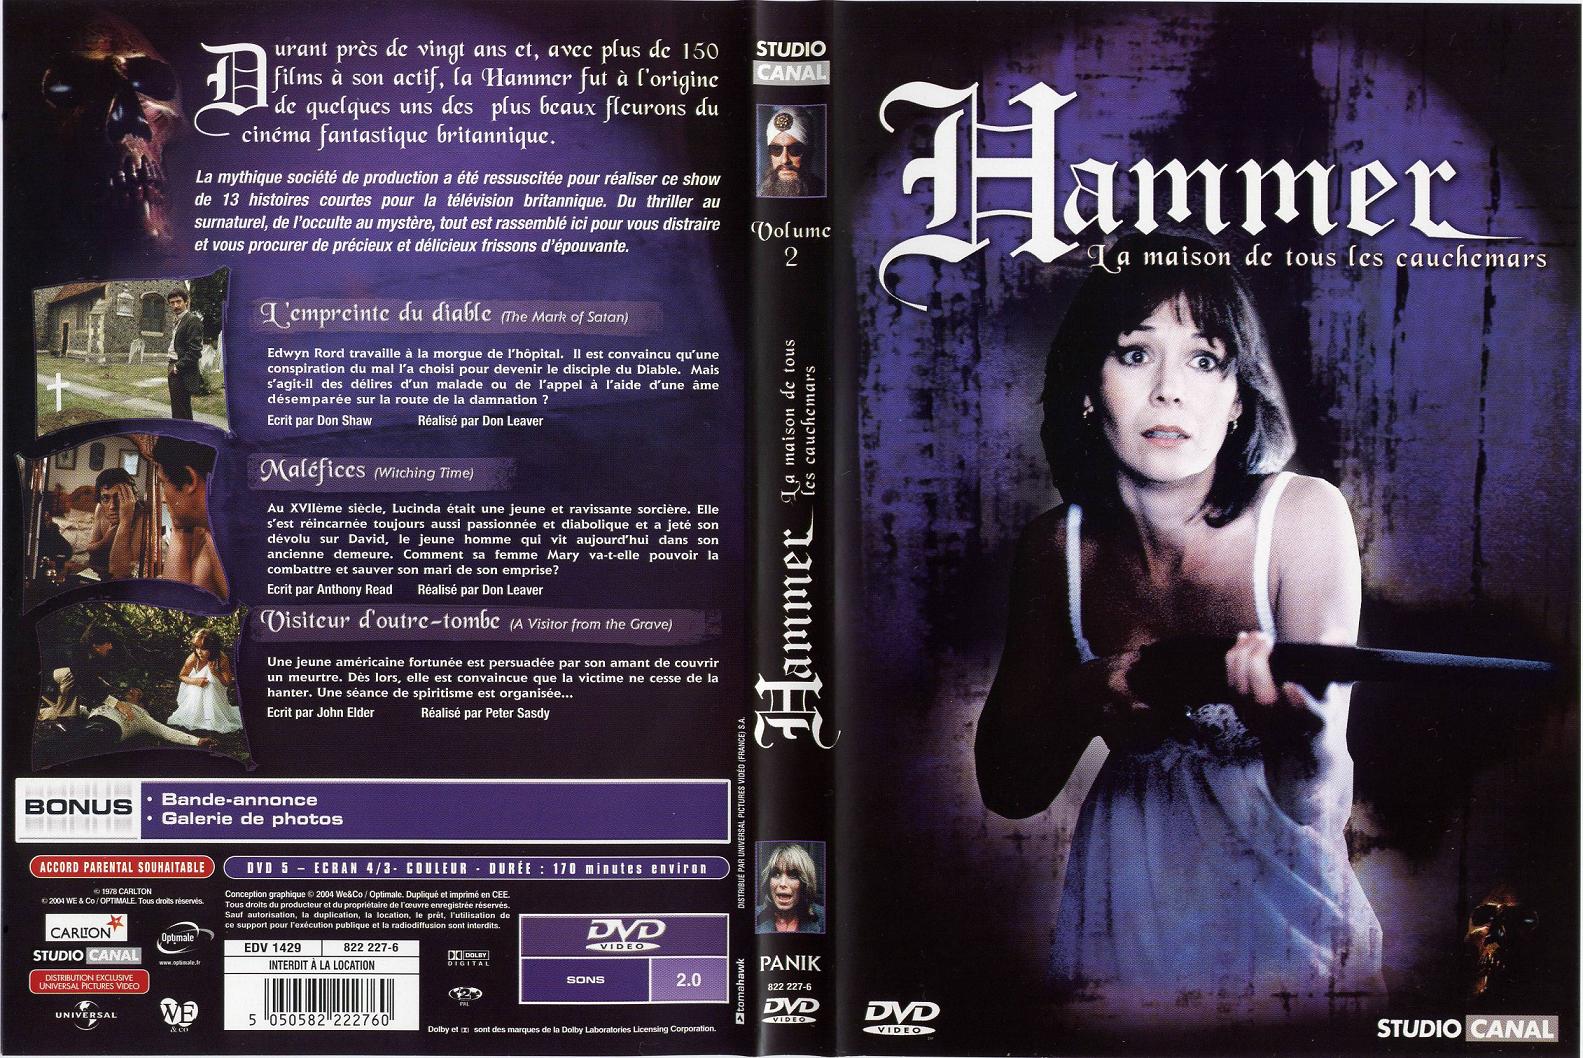 Jaquette DVD Hammer la maison de tous les cauchemars vol 2